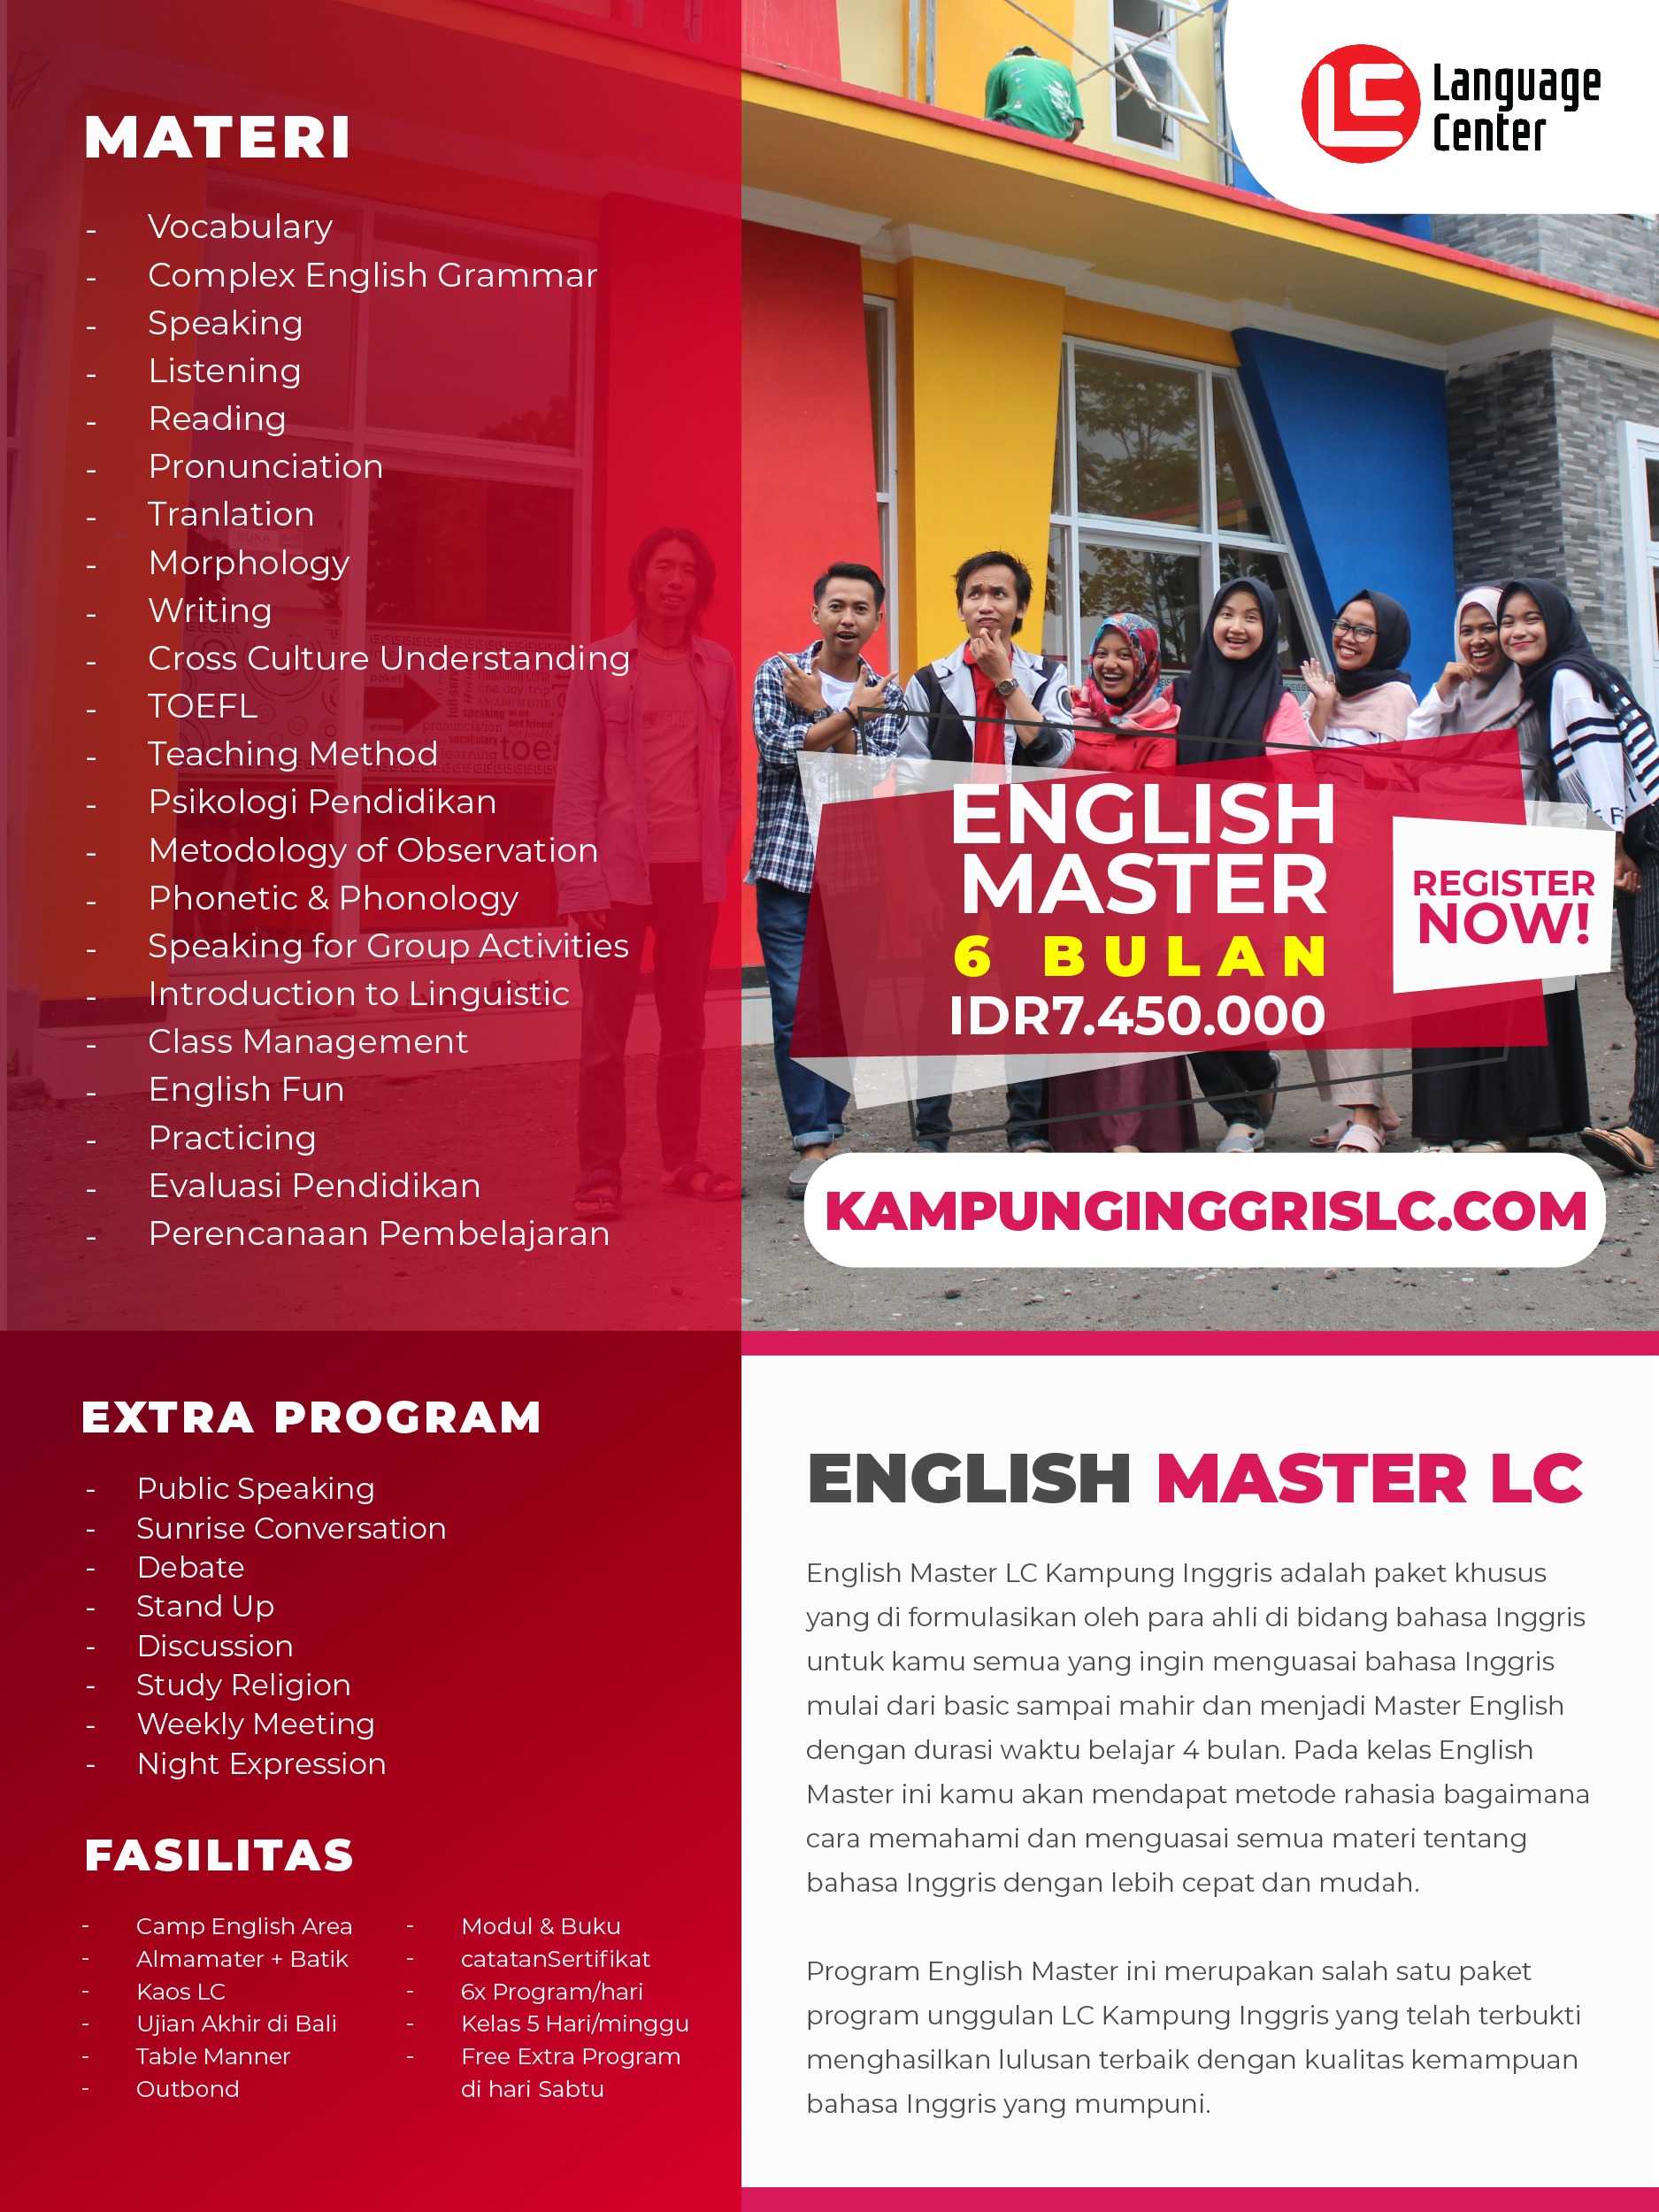 Paket English master 6 bulan